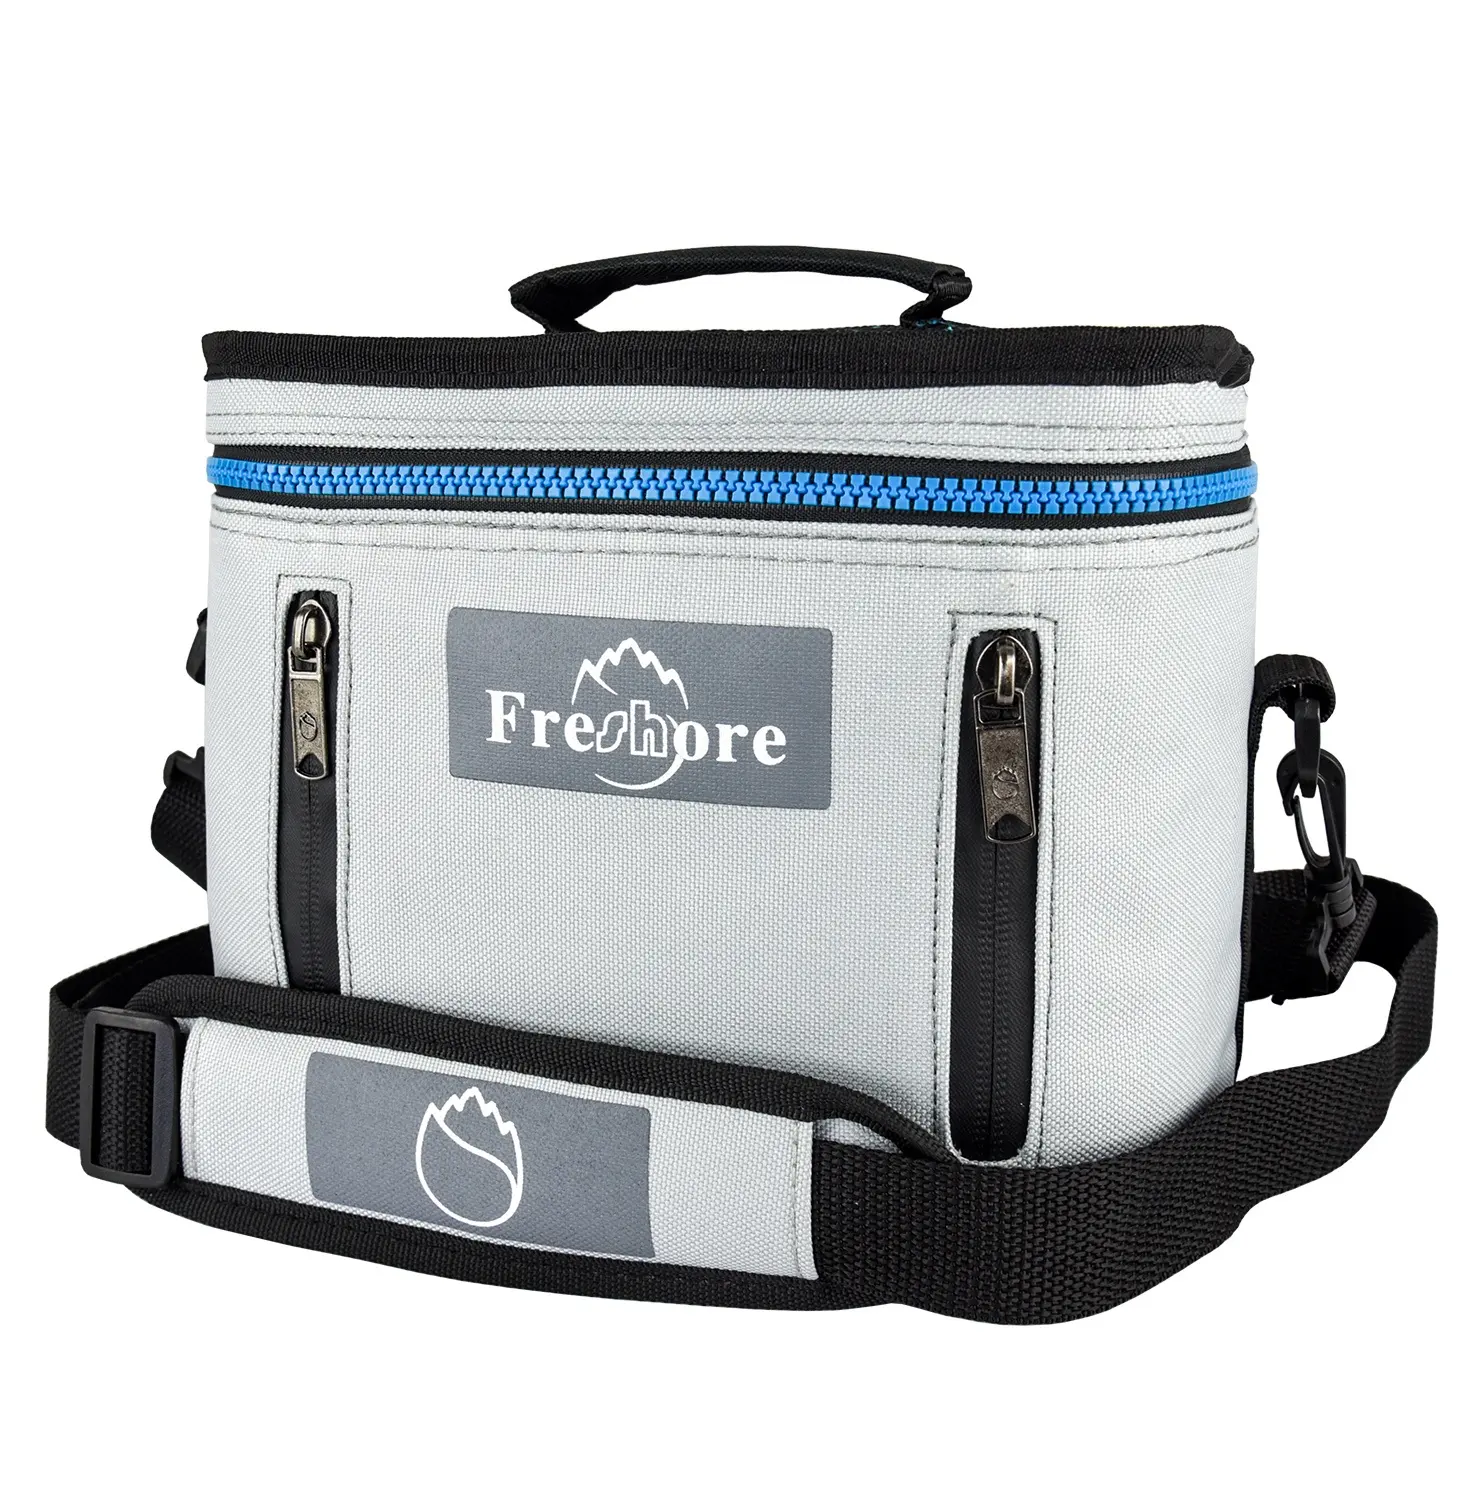 Large Cooler Bag BSCI 6 Liter Insulated Cooler Bag Large Tote Lunch Bag With Adjustable Detachable Shoulder Strap For Work Or School